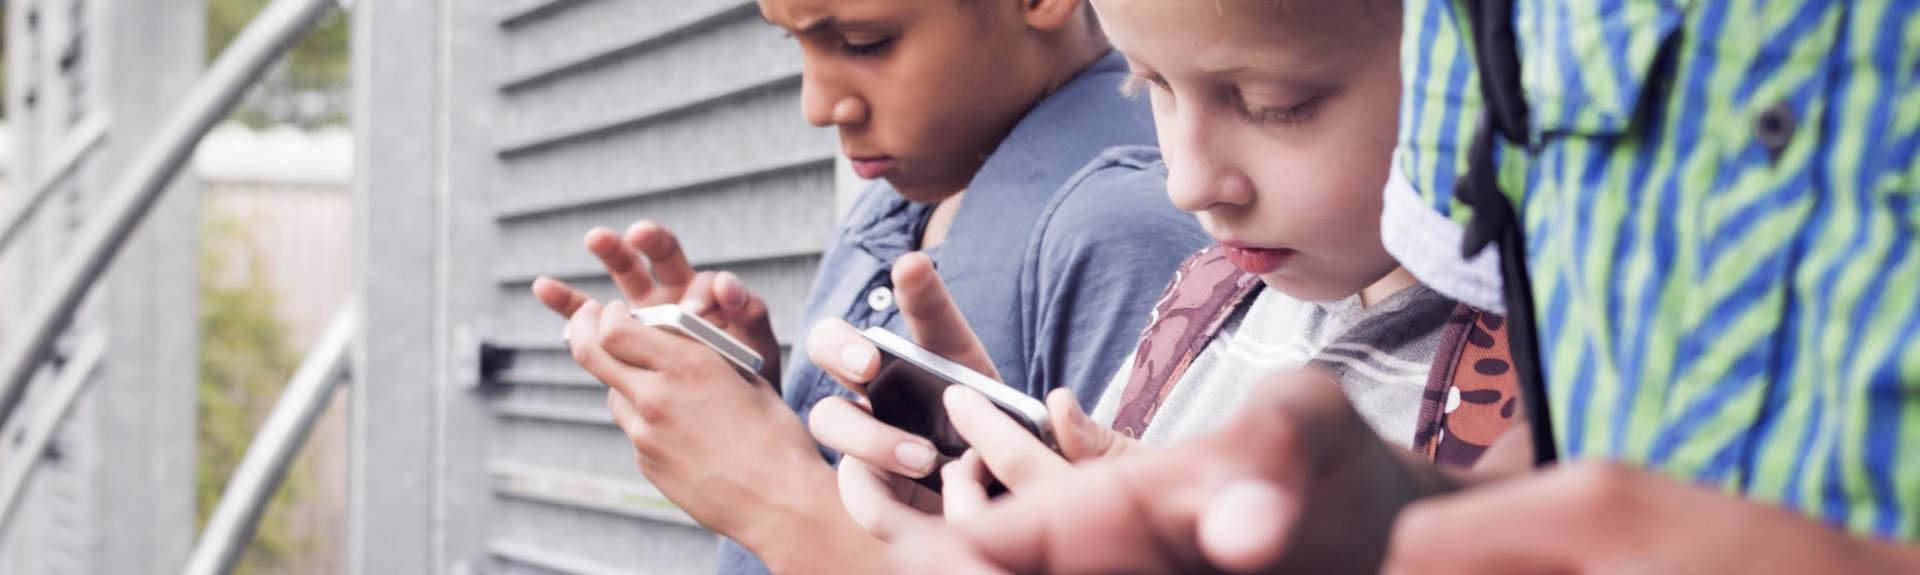 Regole per limitare l’uso dei cellulari tra i ragazzi: a favore Tim Cook, Elon Musk e Zuckerberg